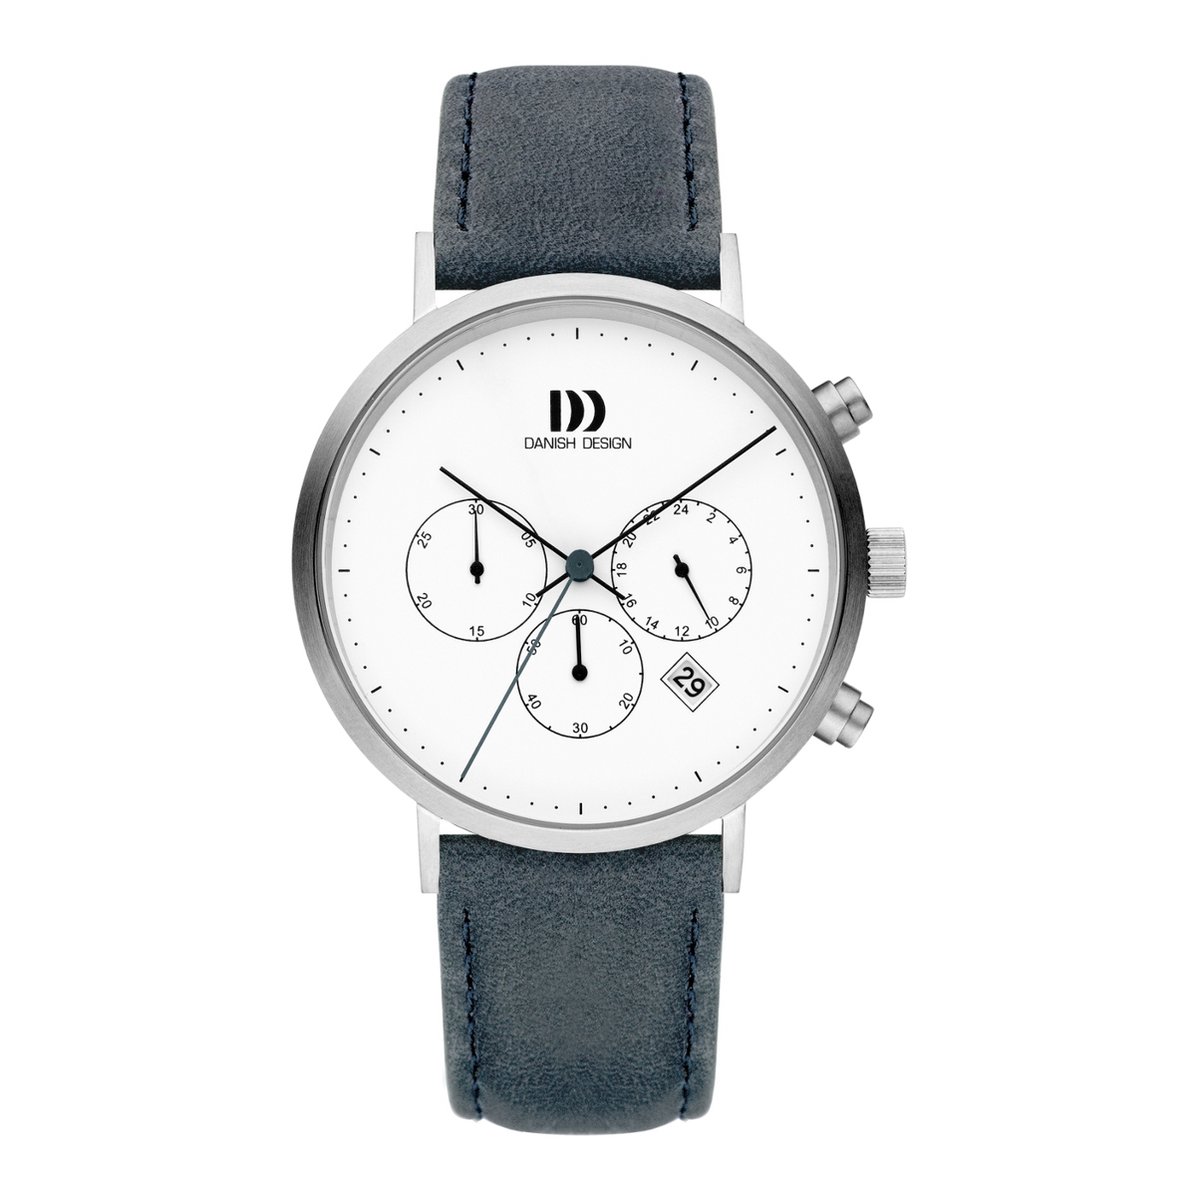 Danish Design horloge - Blauw